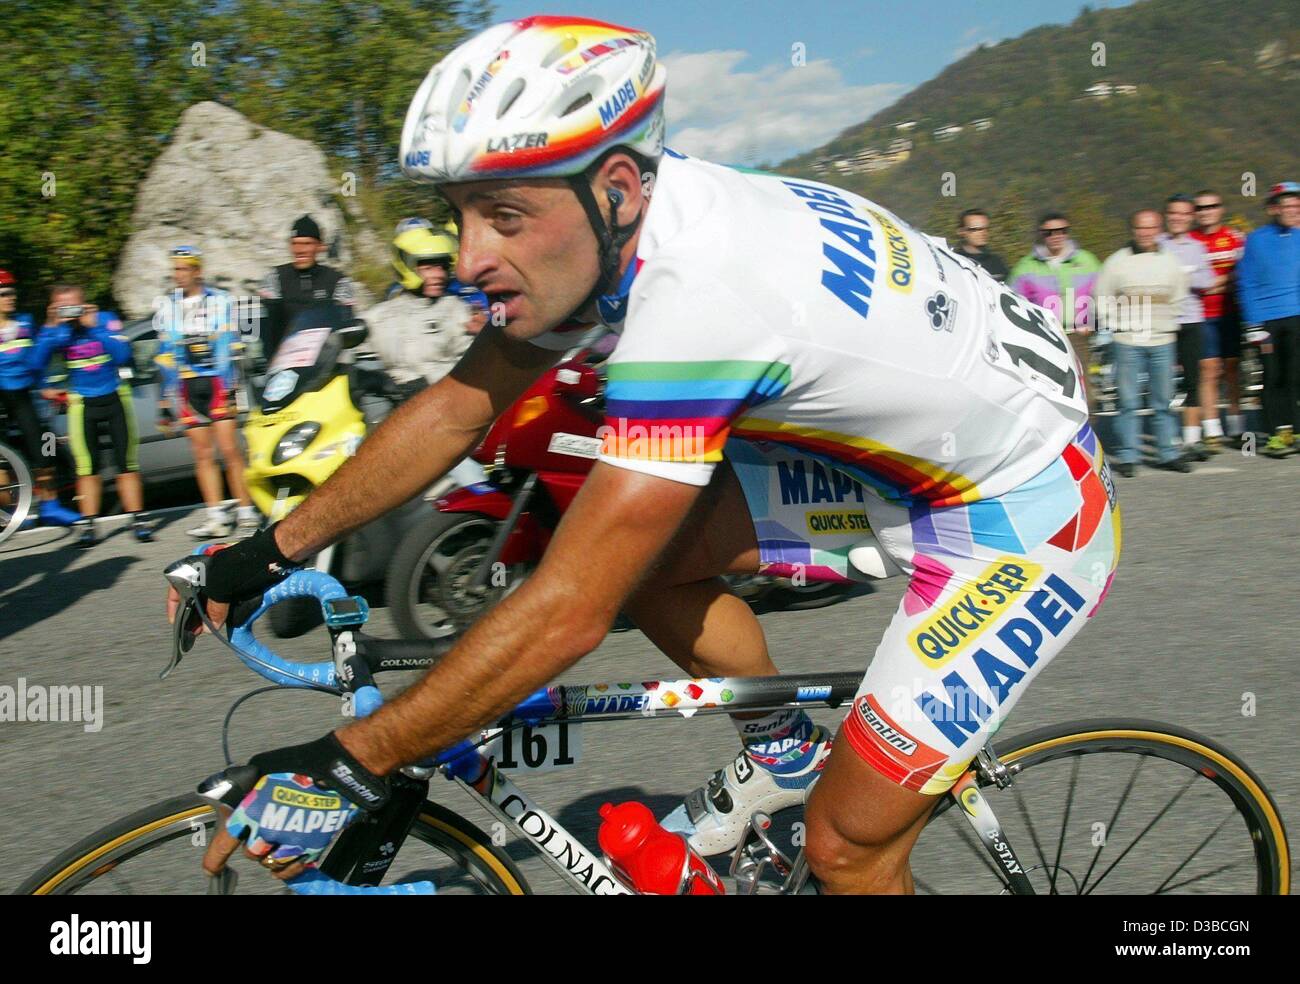 (Afp) - le cycliste italien Paolo Bettini de l'équipe Mapei-Quick Step cycles au cours du 96ème Tour de Lombardie à Bergame, Italie du nord, 19 octobre 2002. Bien qu'il n'a pas gagner la course il s'est classé premier au classement général et a remporté la Coupe du monde. Le "Giro di Lombardia' est la dernière course de la coupe du monde Banque D'Images